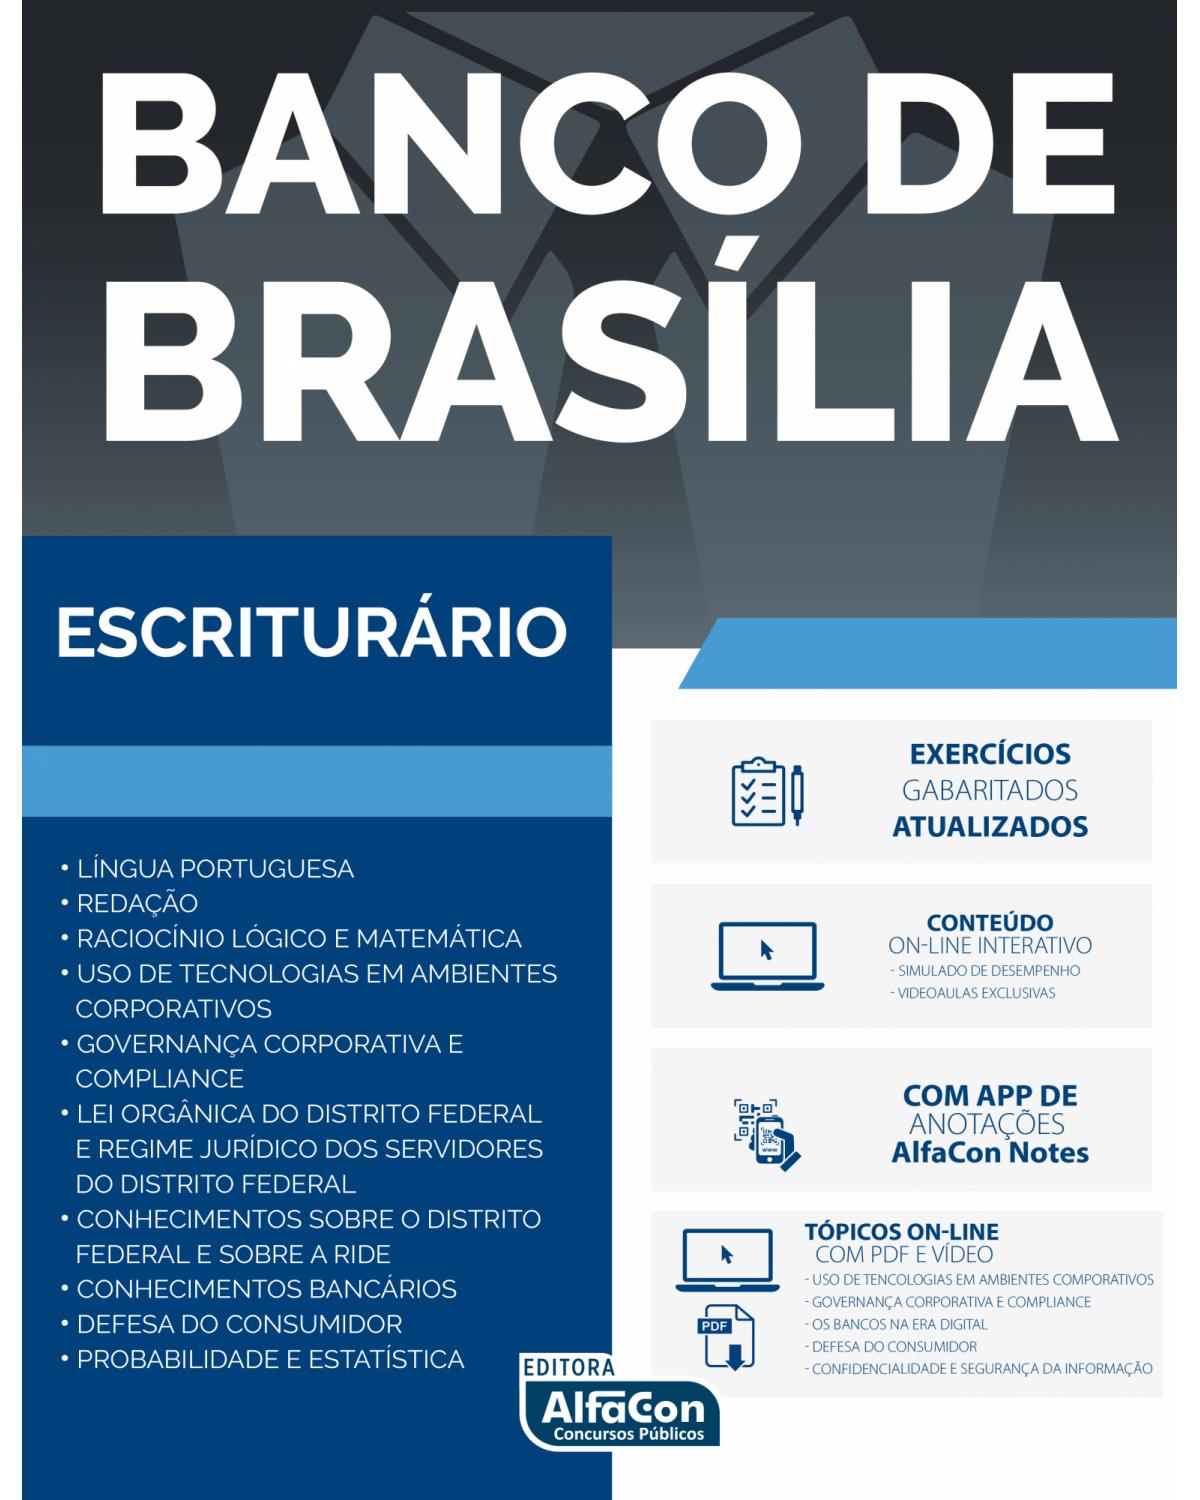 Banco de Brasília - Escriturário - 1ª Edição | 2020